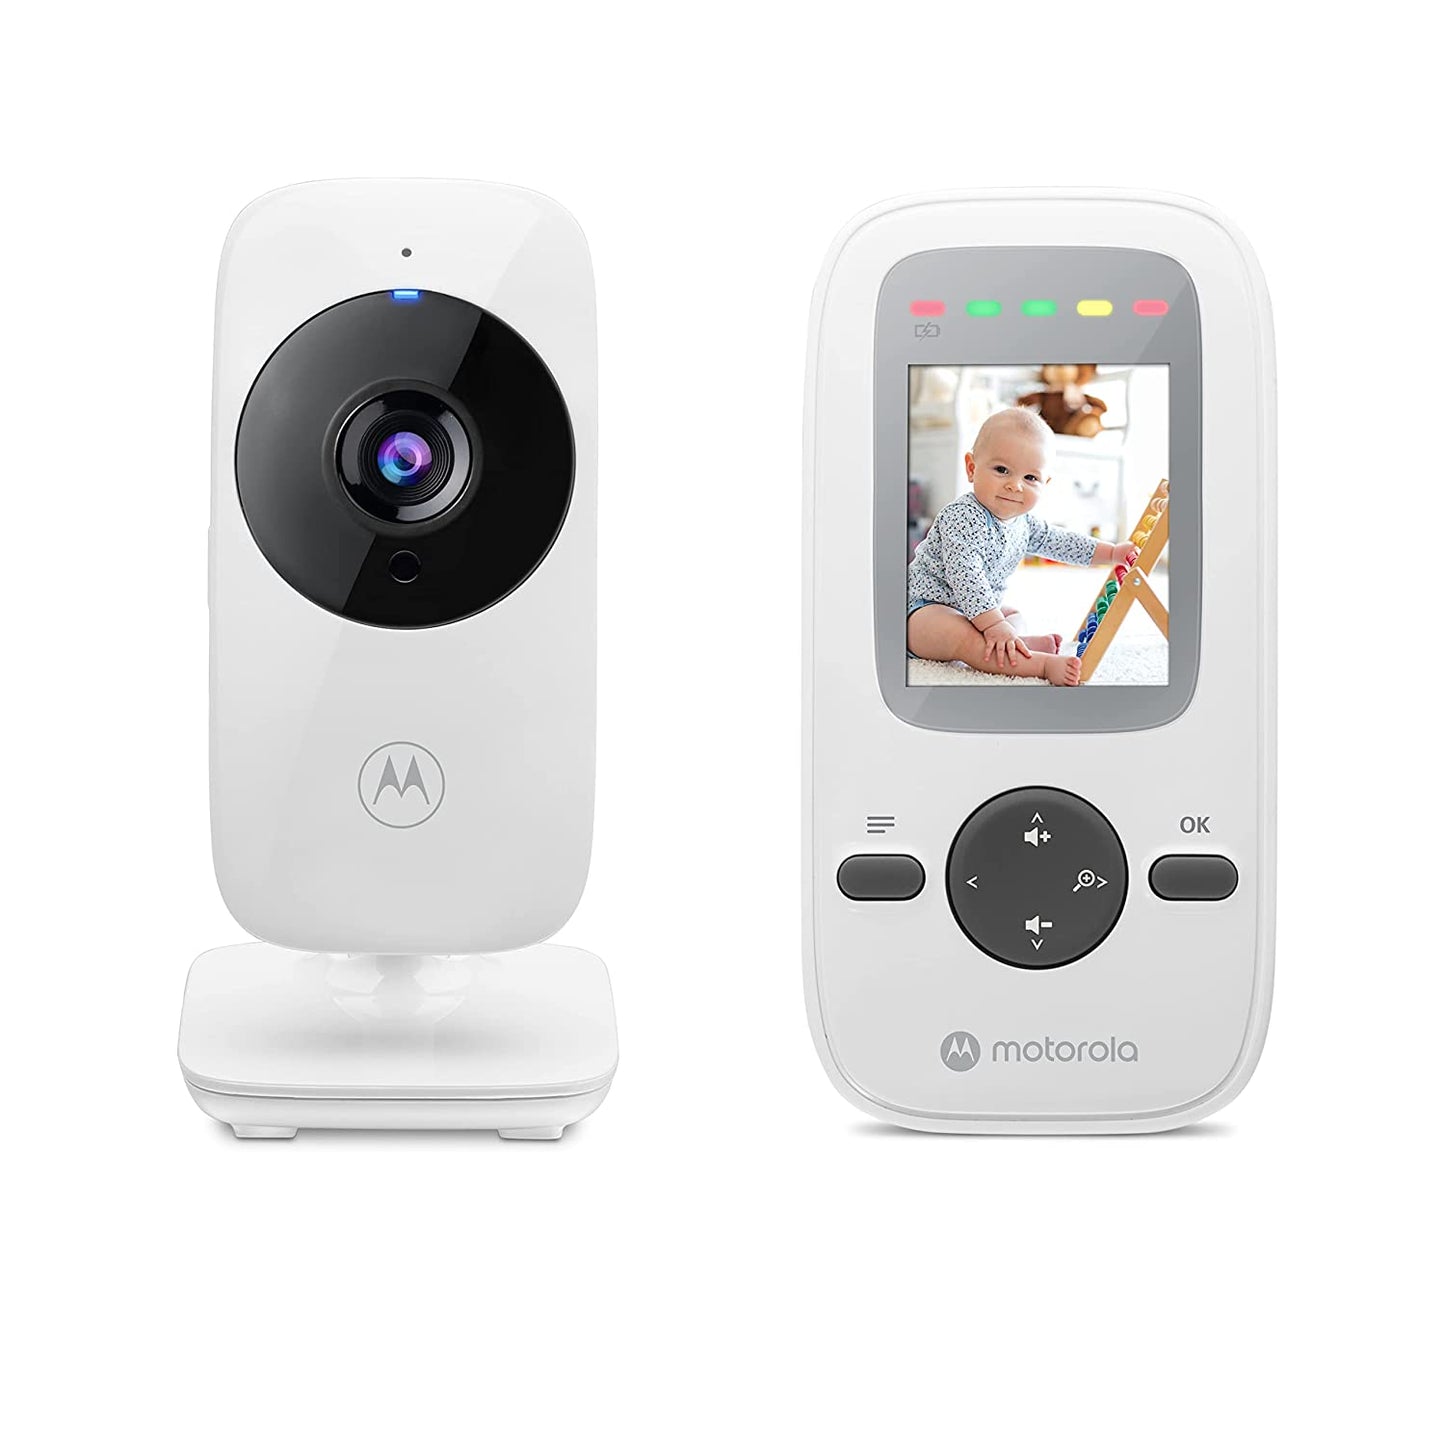 Motorola VM 481 kamerás babaőrző - BBLOVE | Bababolt és webshop